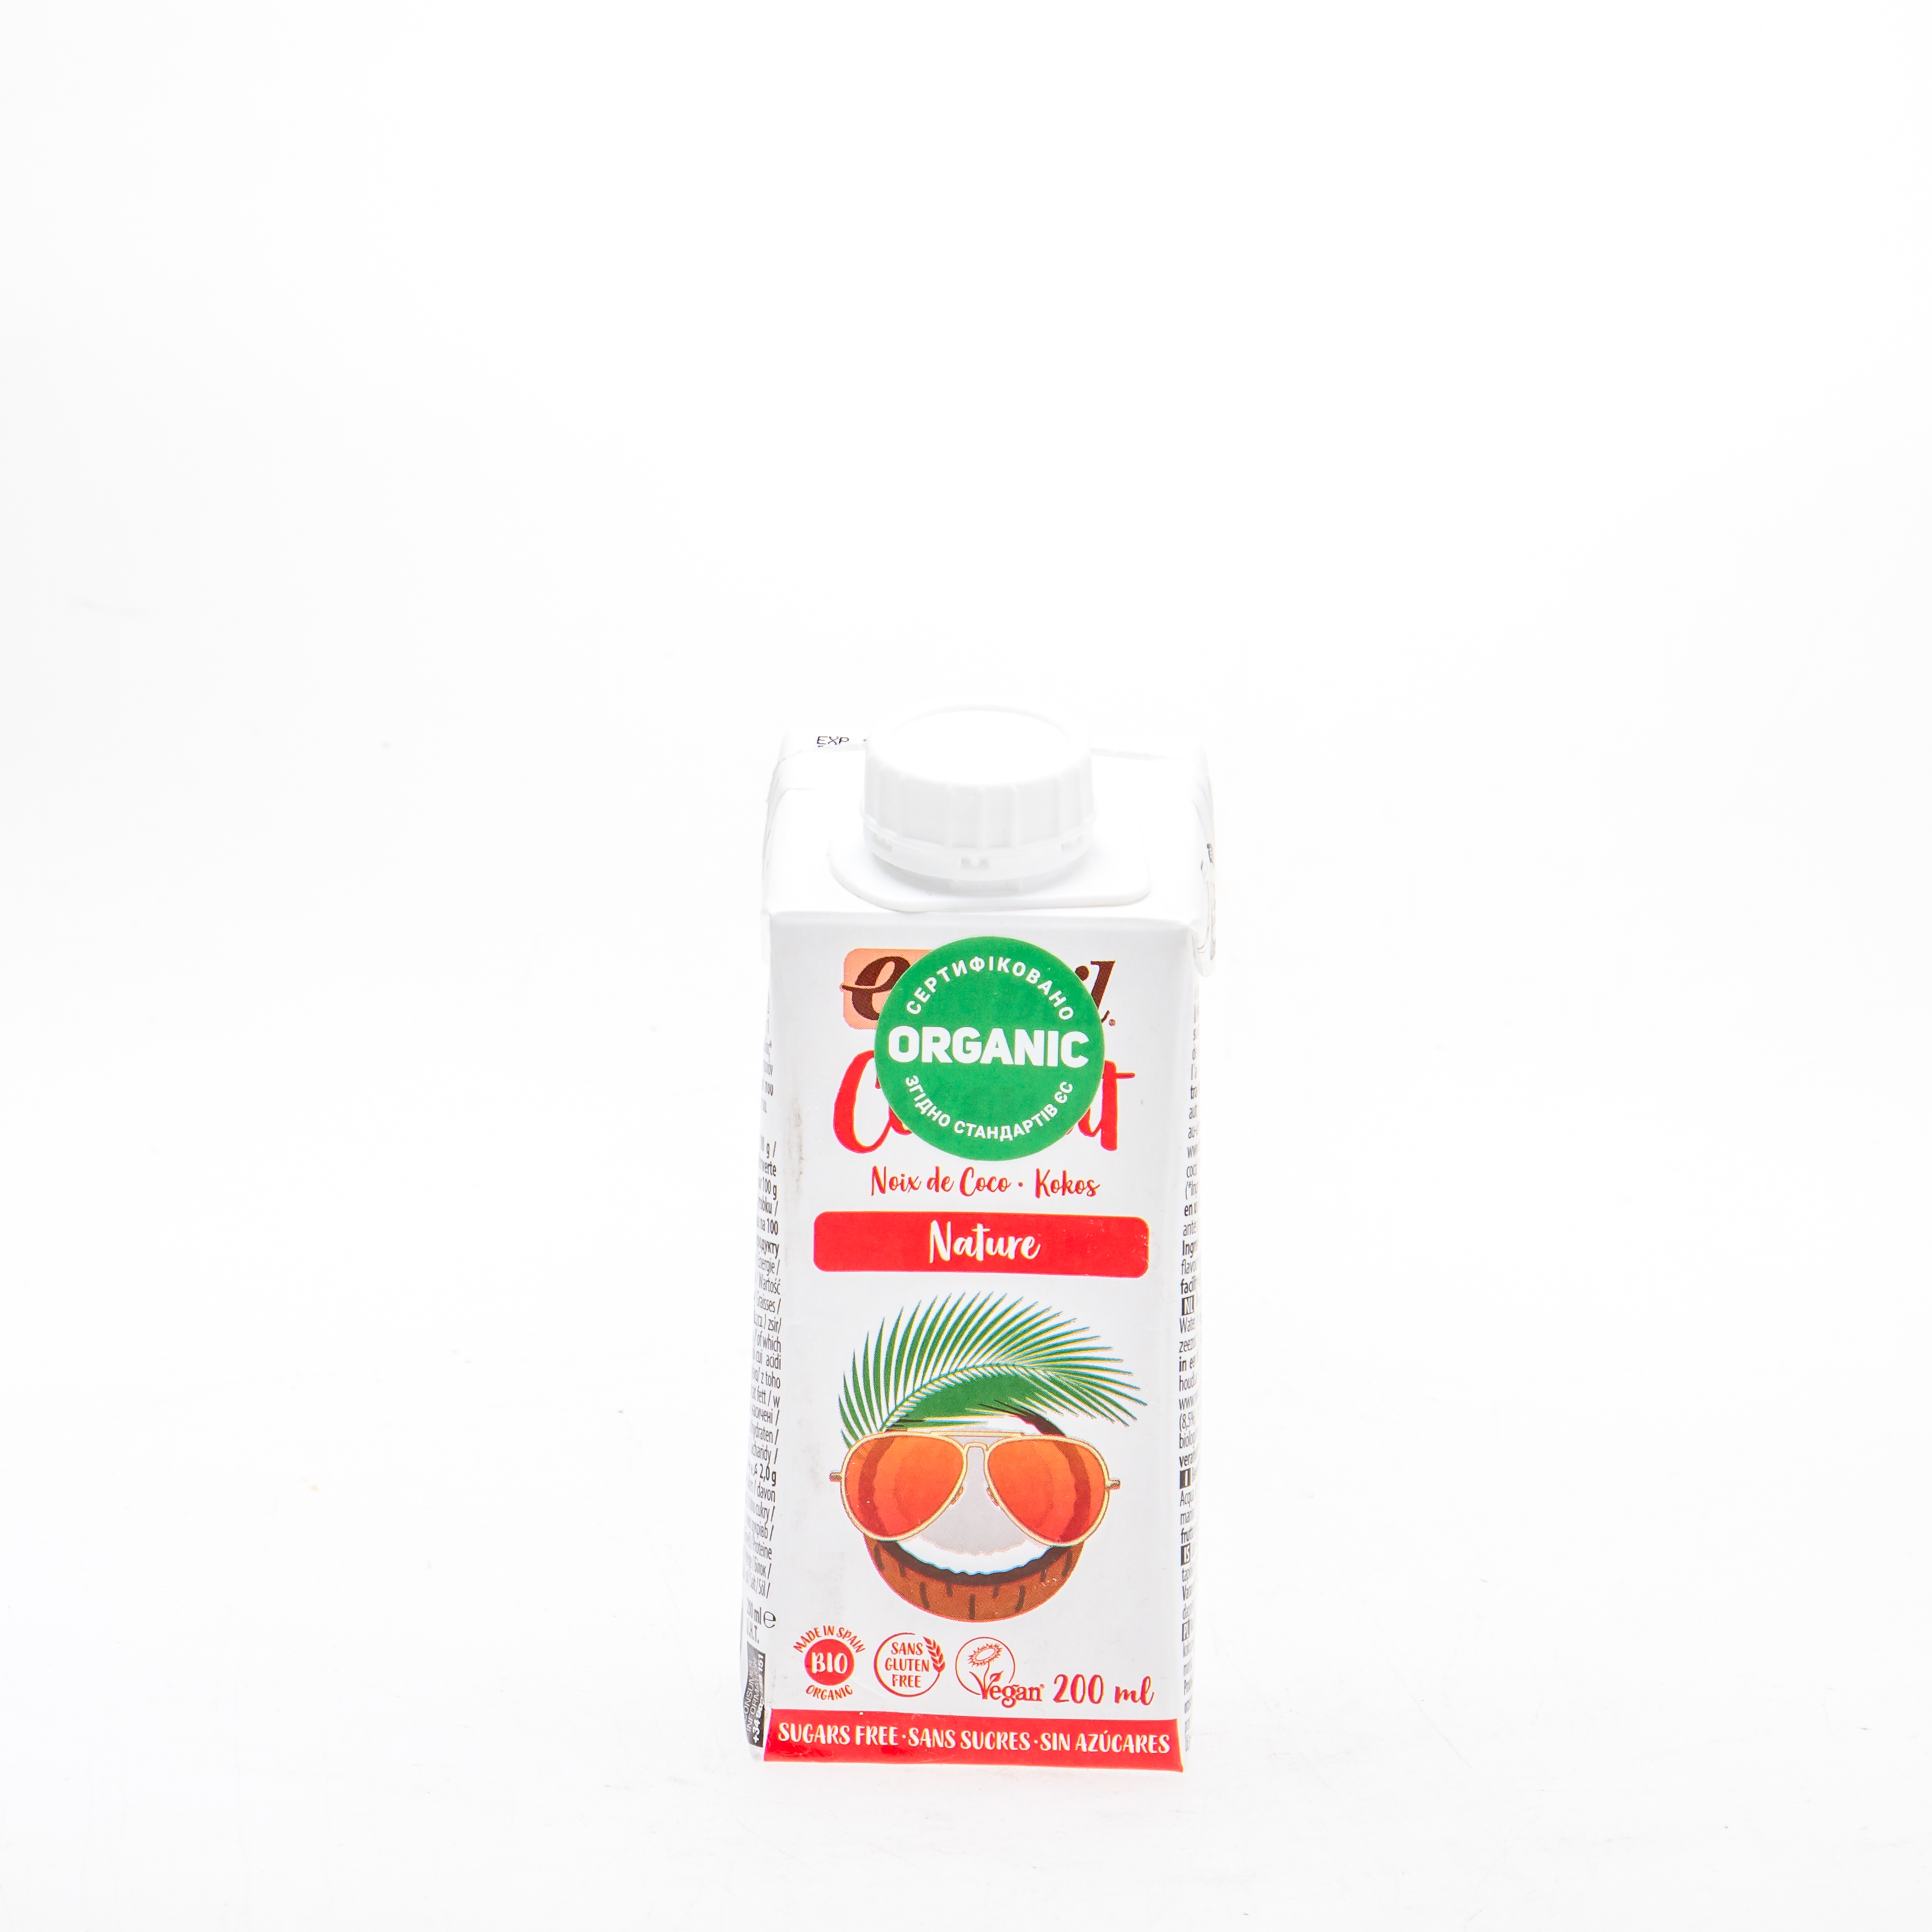 Органічне рослинне молоко з кокосу без цукру 200 мл - купить в интернет-магазине Юнимед